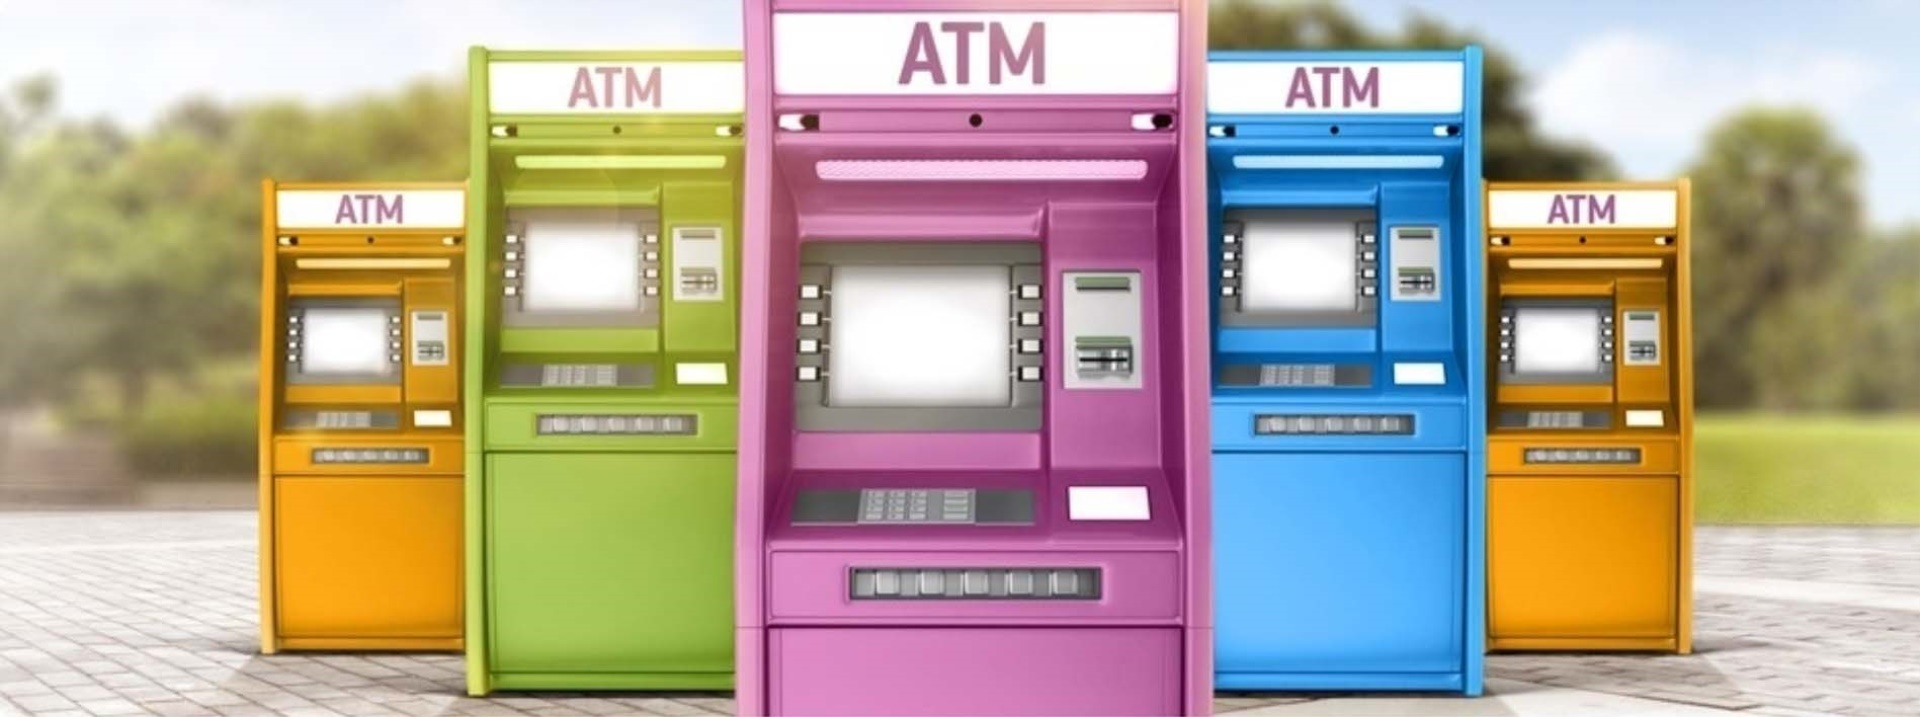 Hükümlü ve Tutukların Vakıfbank Hesaplarına Para yatırma işlemi (ATM)